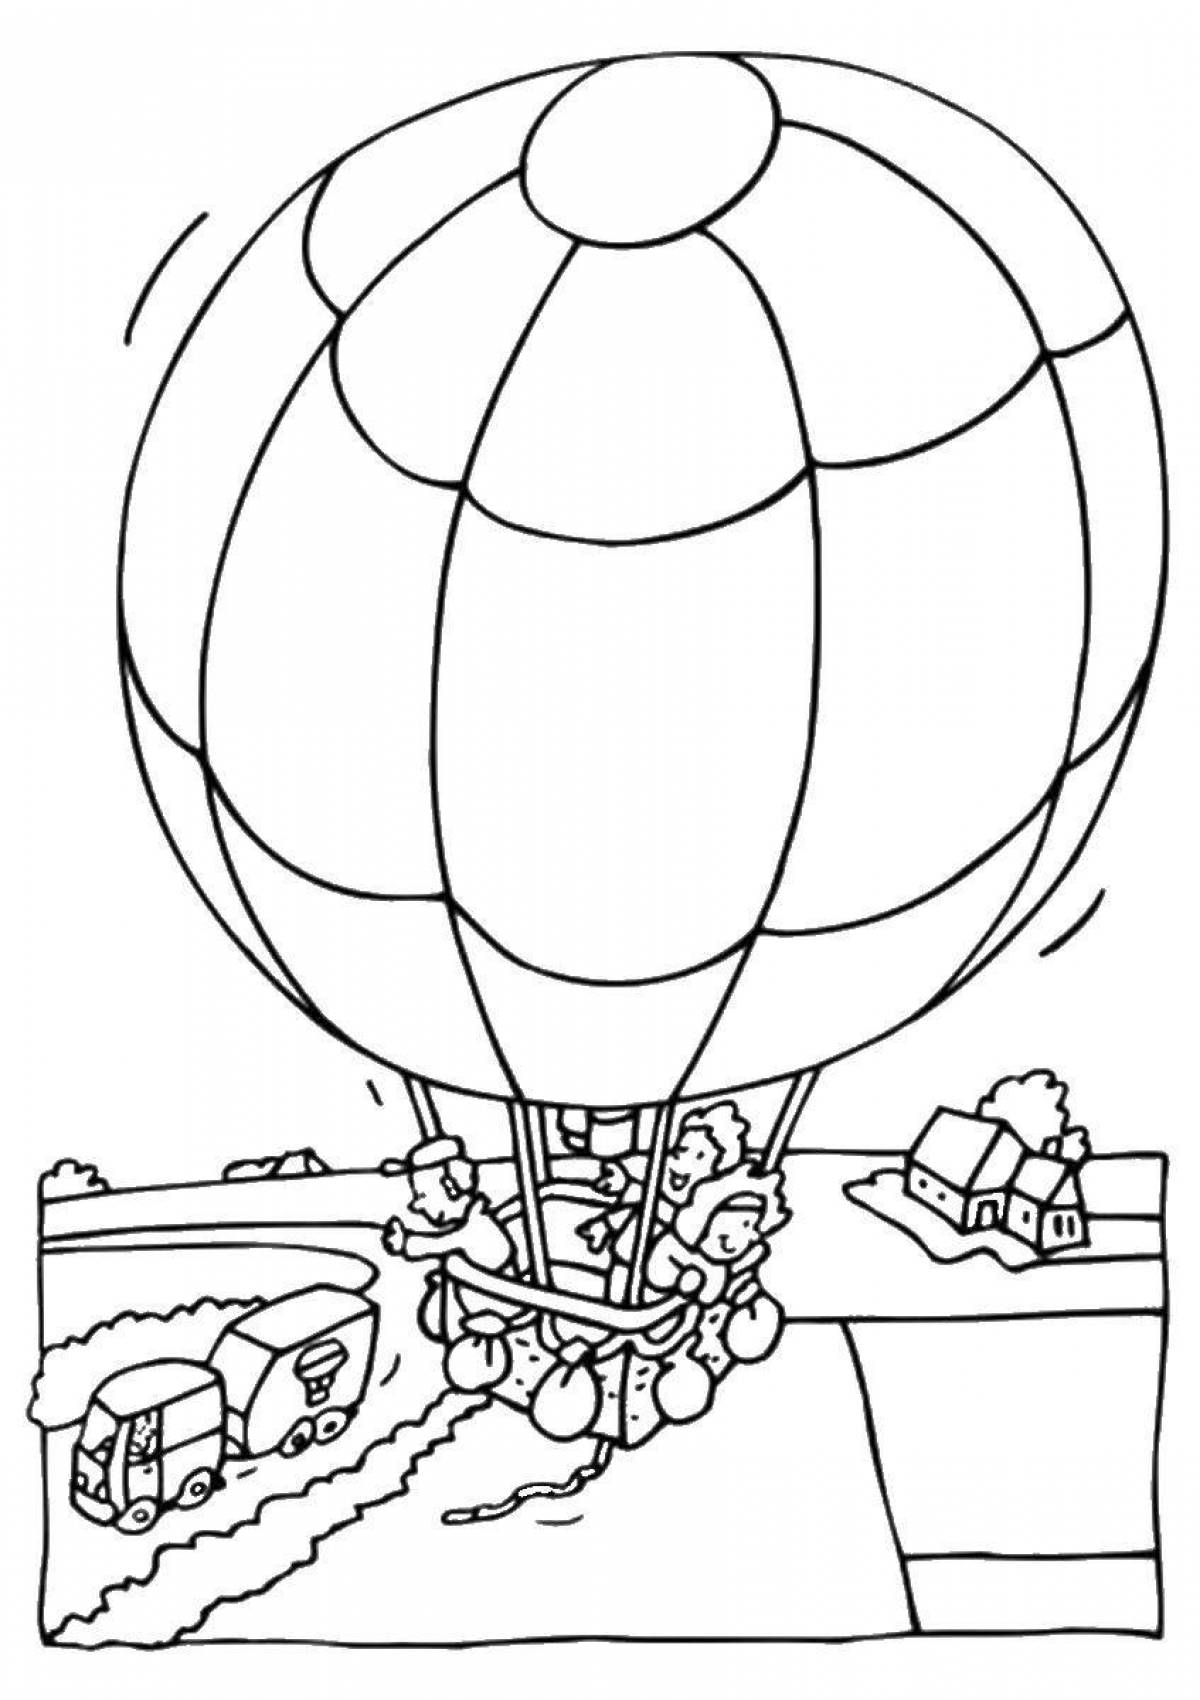 Великолепная раскраска с воздушными шарами для детей